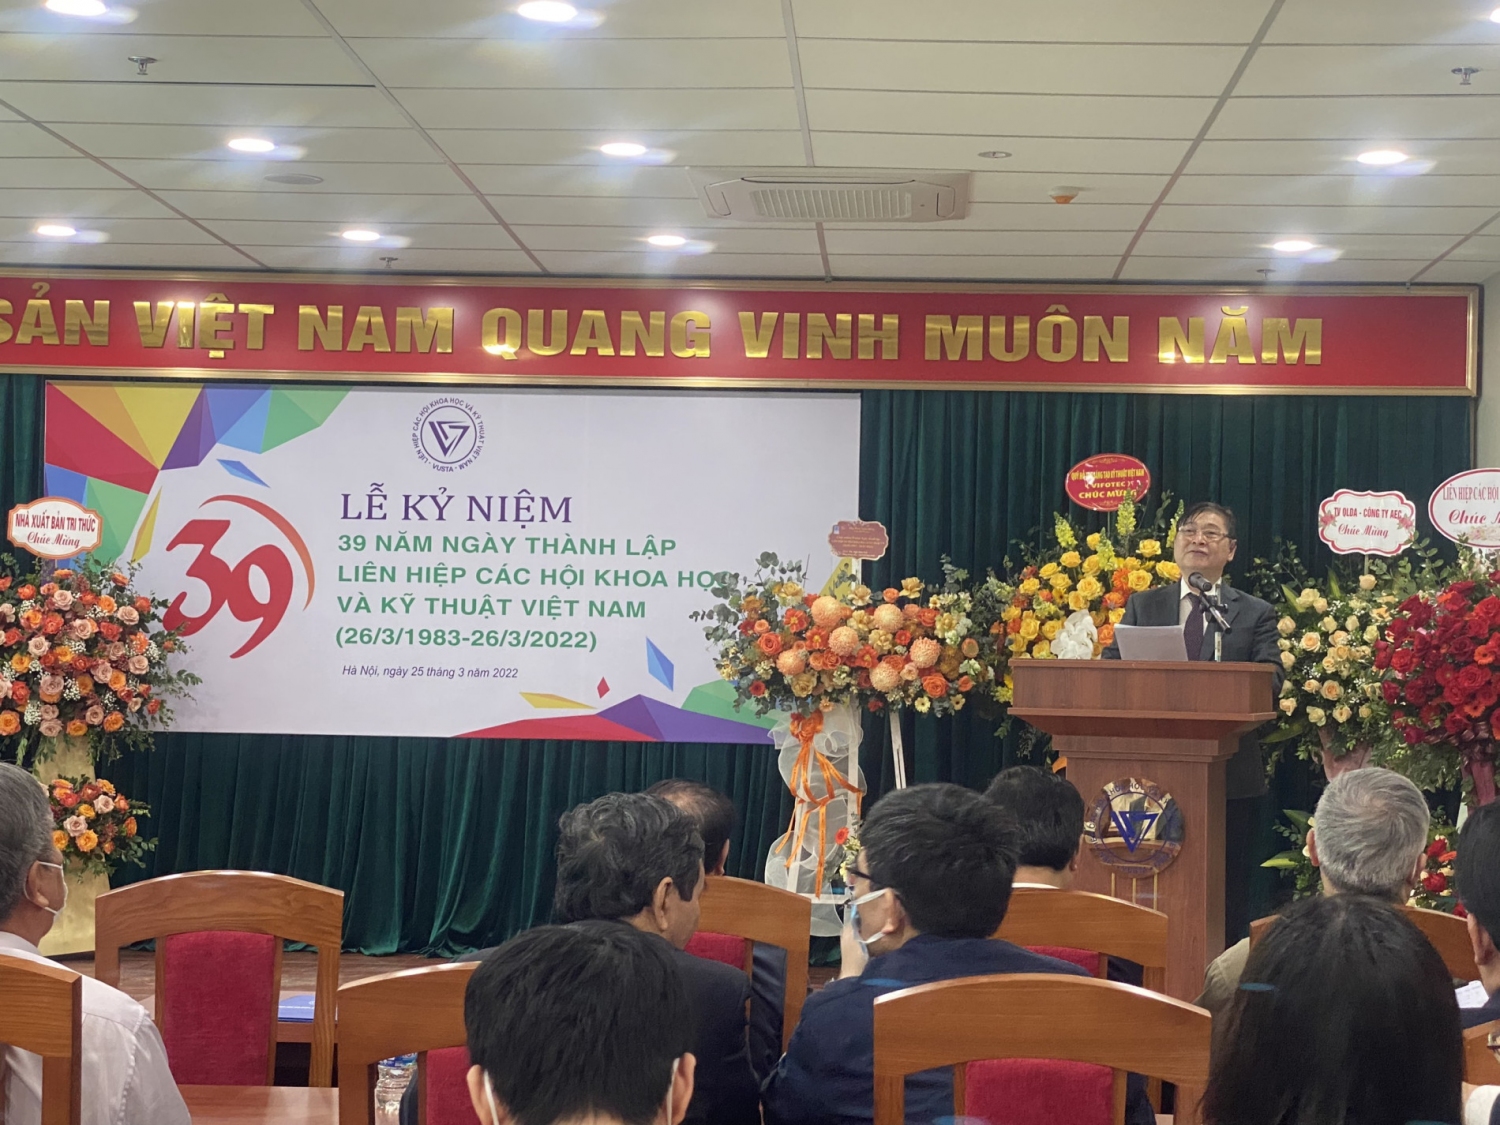 Chủ tịch Liên hiệp Hội Việt Nam Phan Xuân Dũng phát biểu tại Lễ kỷ niệm